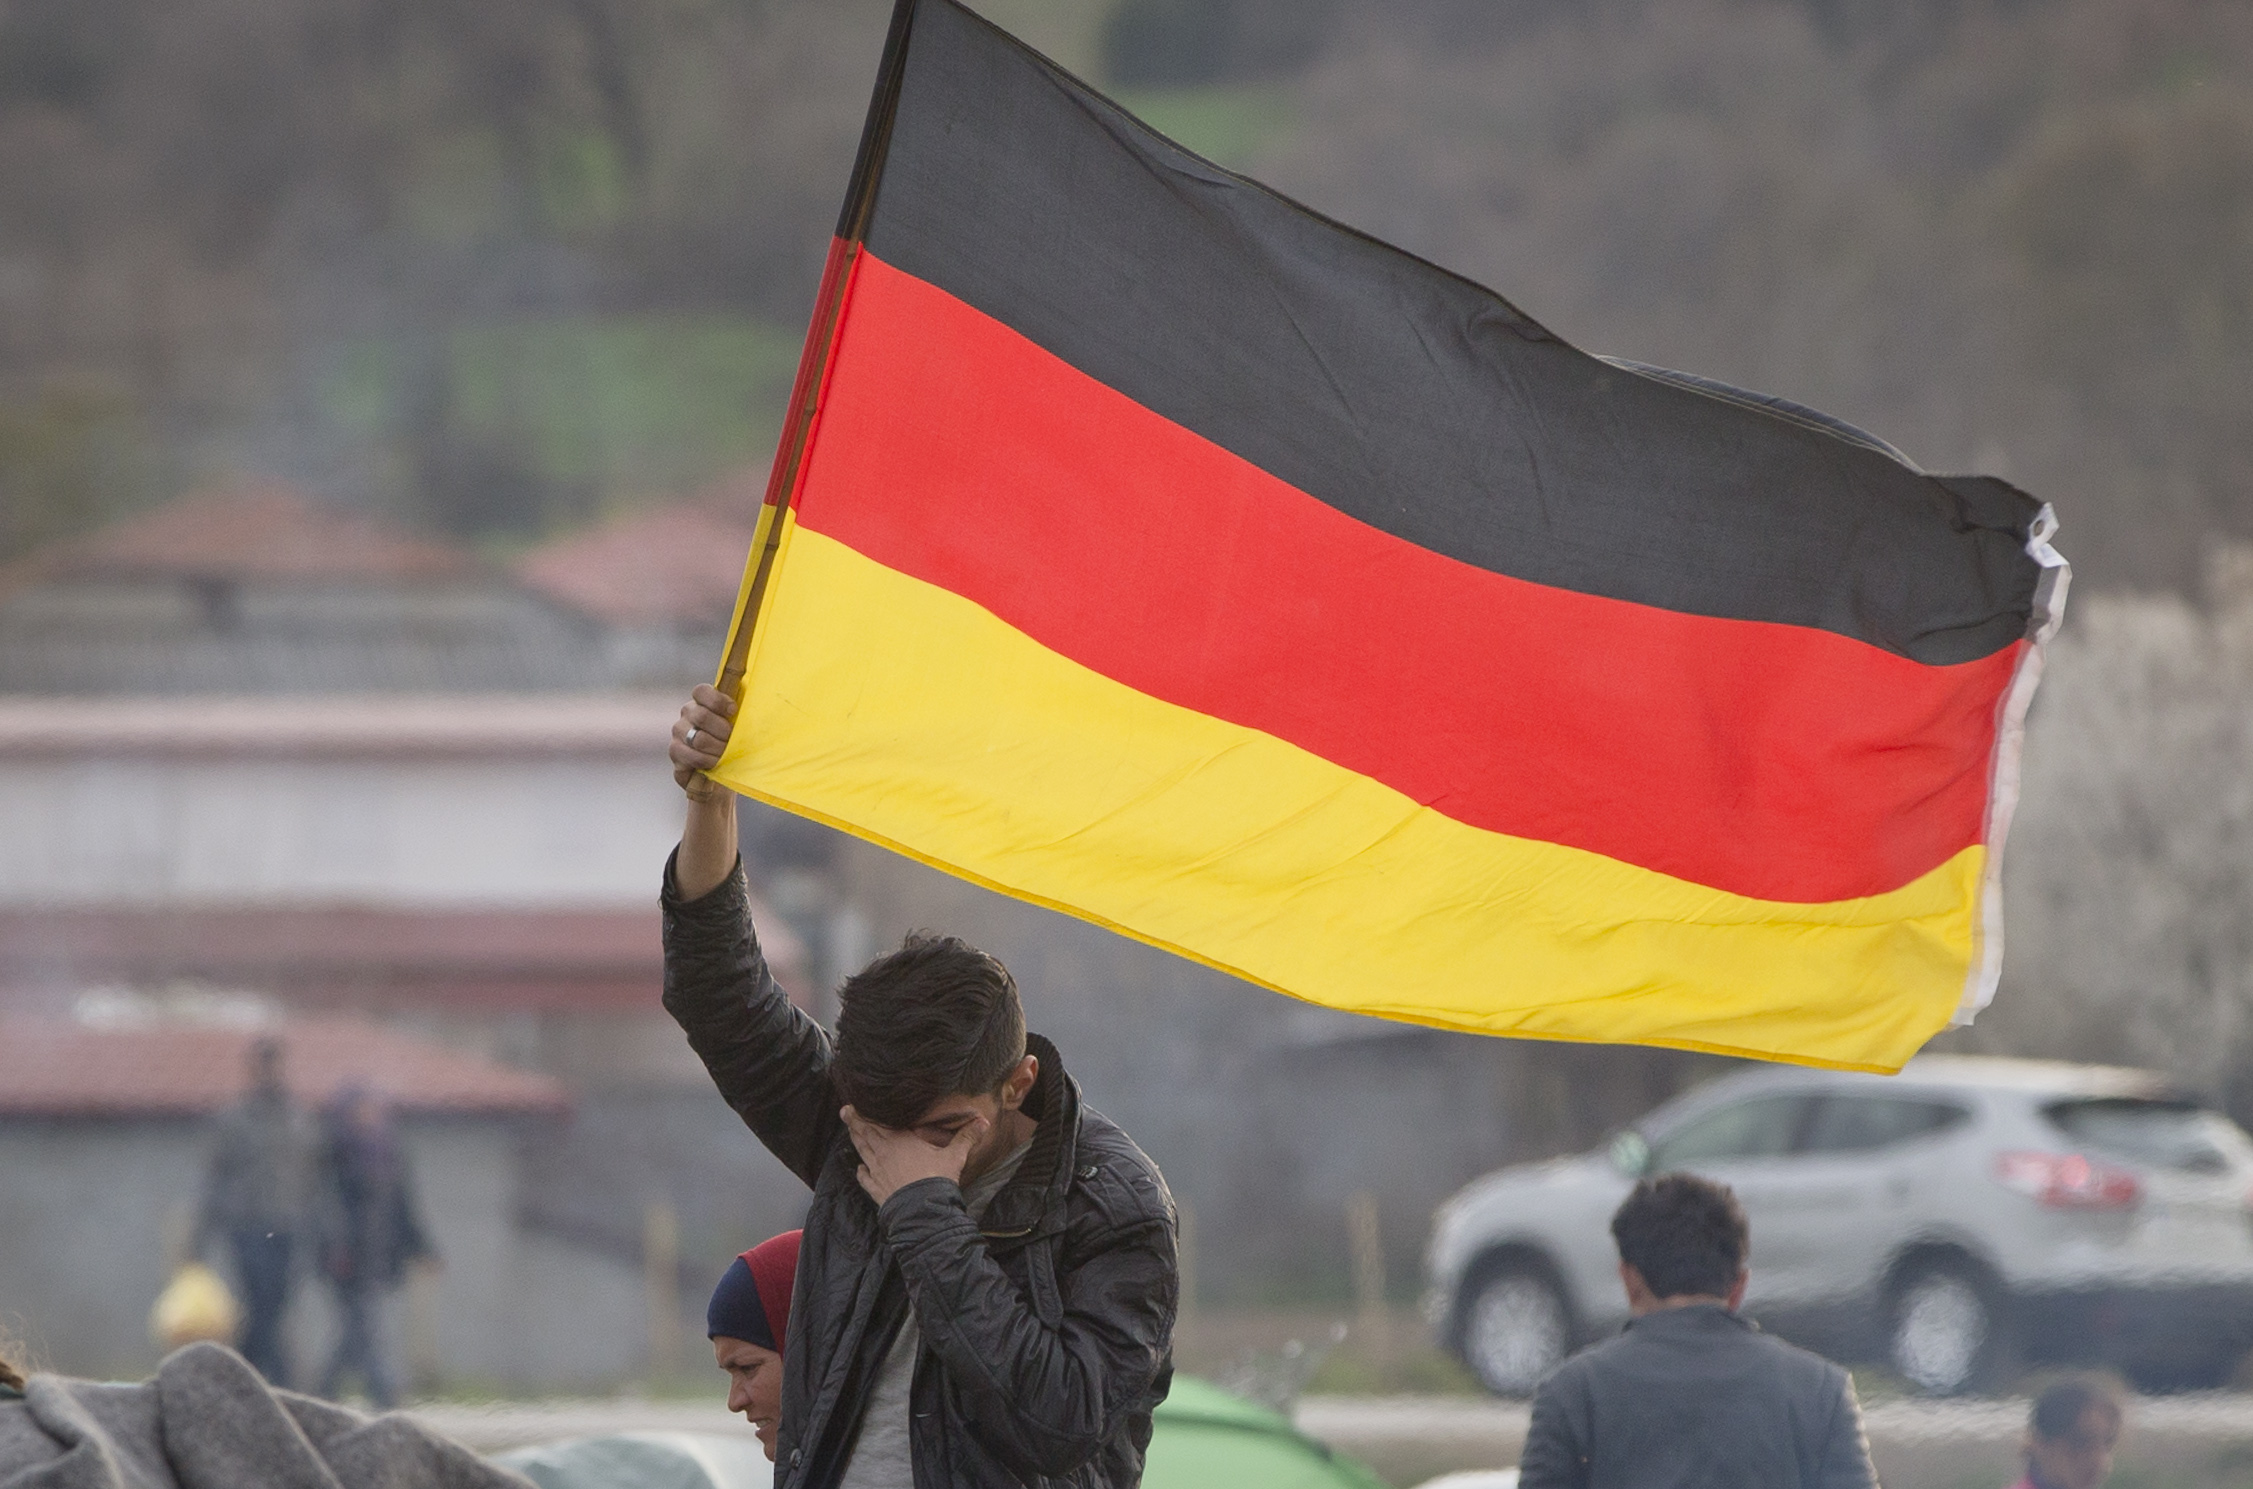 Γερμανία: Οι αποκαλύψεις για σχέδιο της ακροδεξιάς περί απέλασης μεταναστών προκαλούν έντονη ανησυχία στους πολίτες